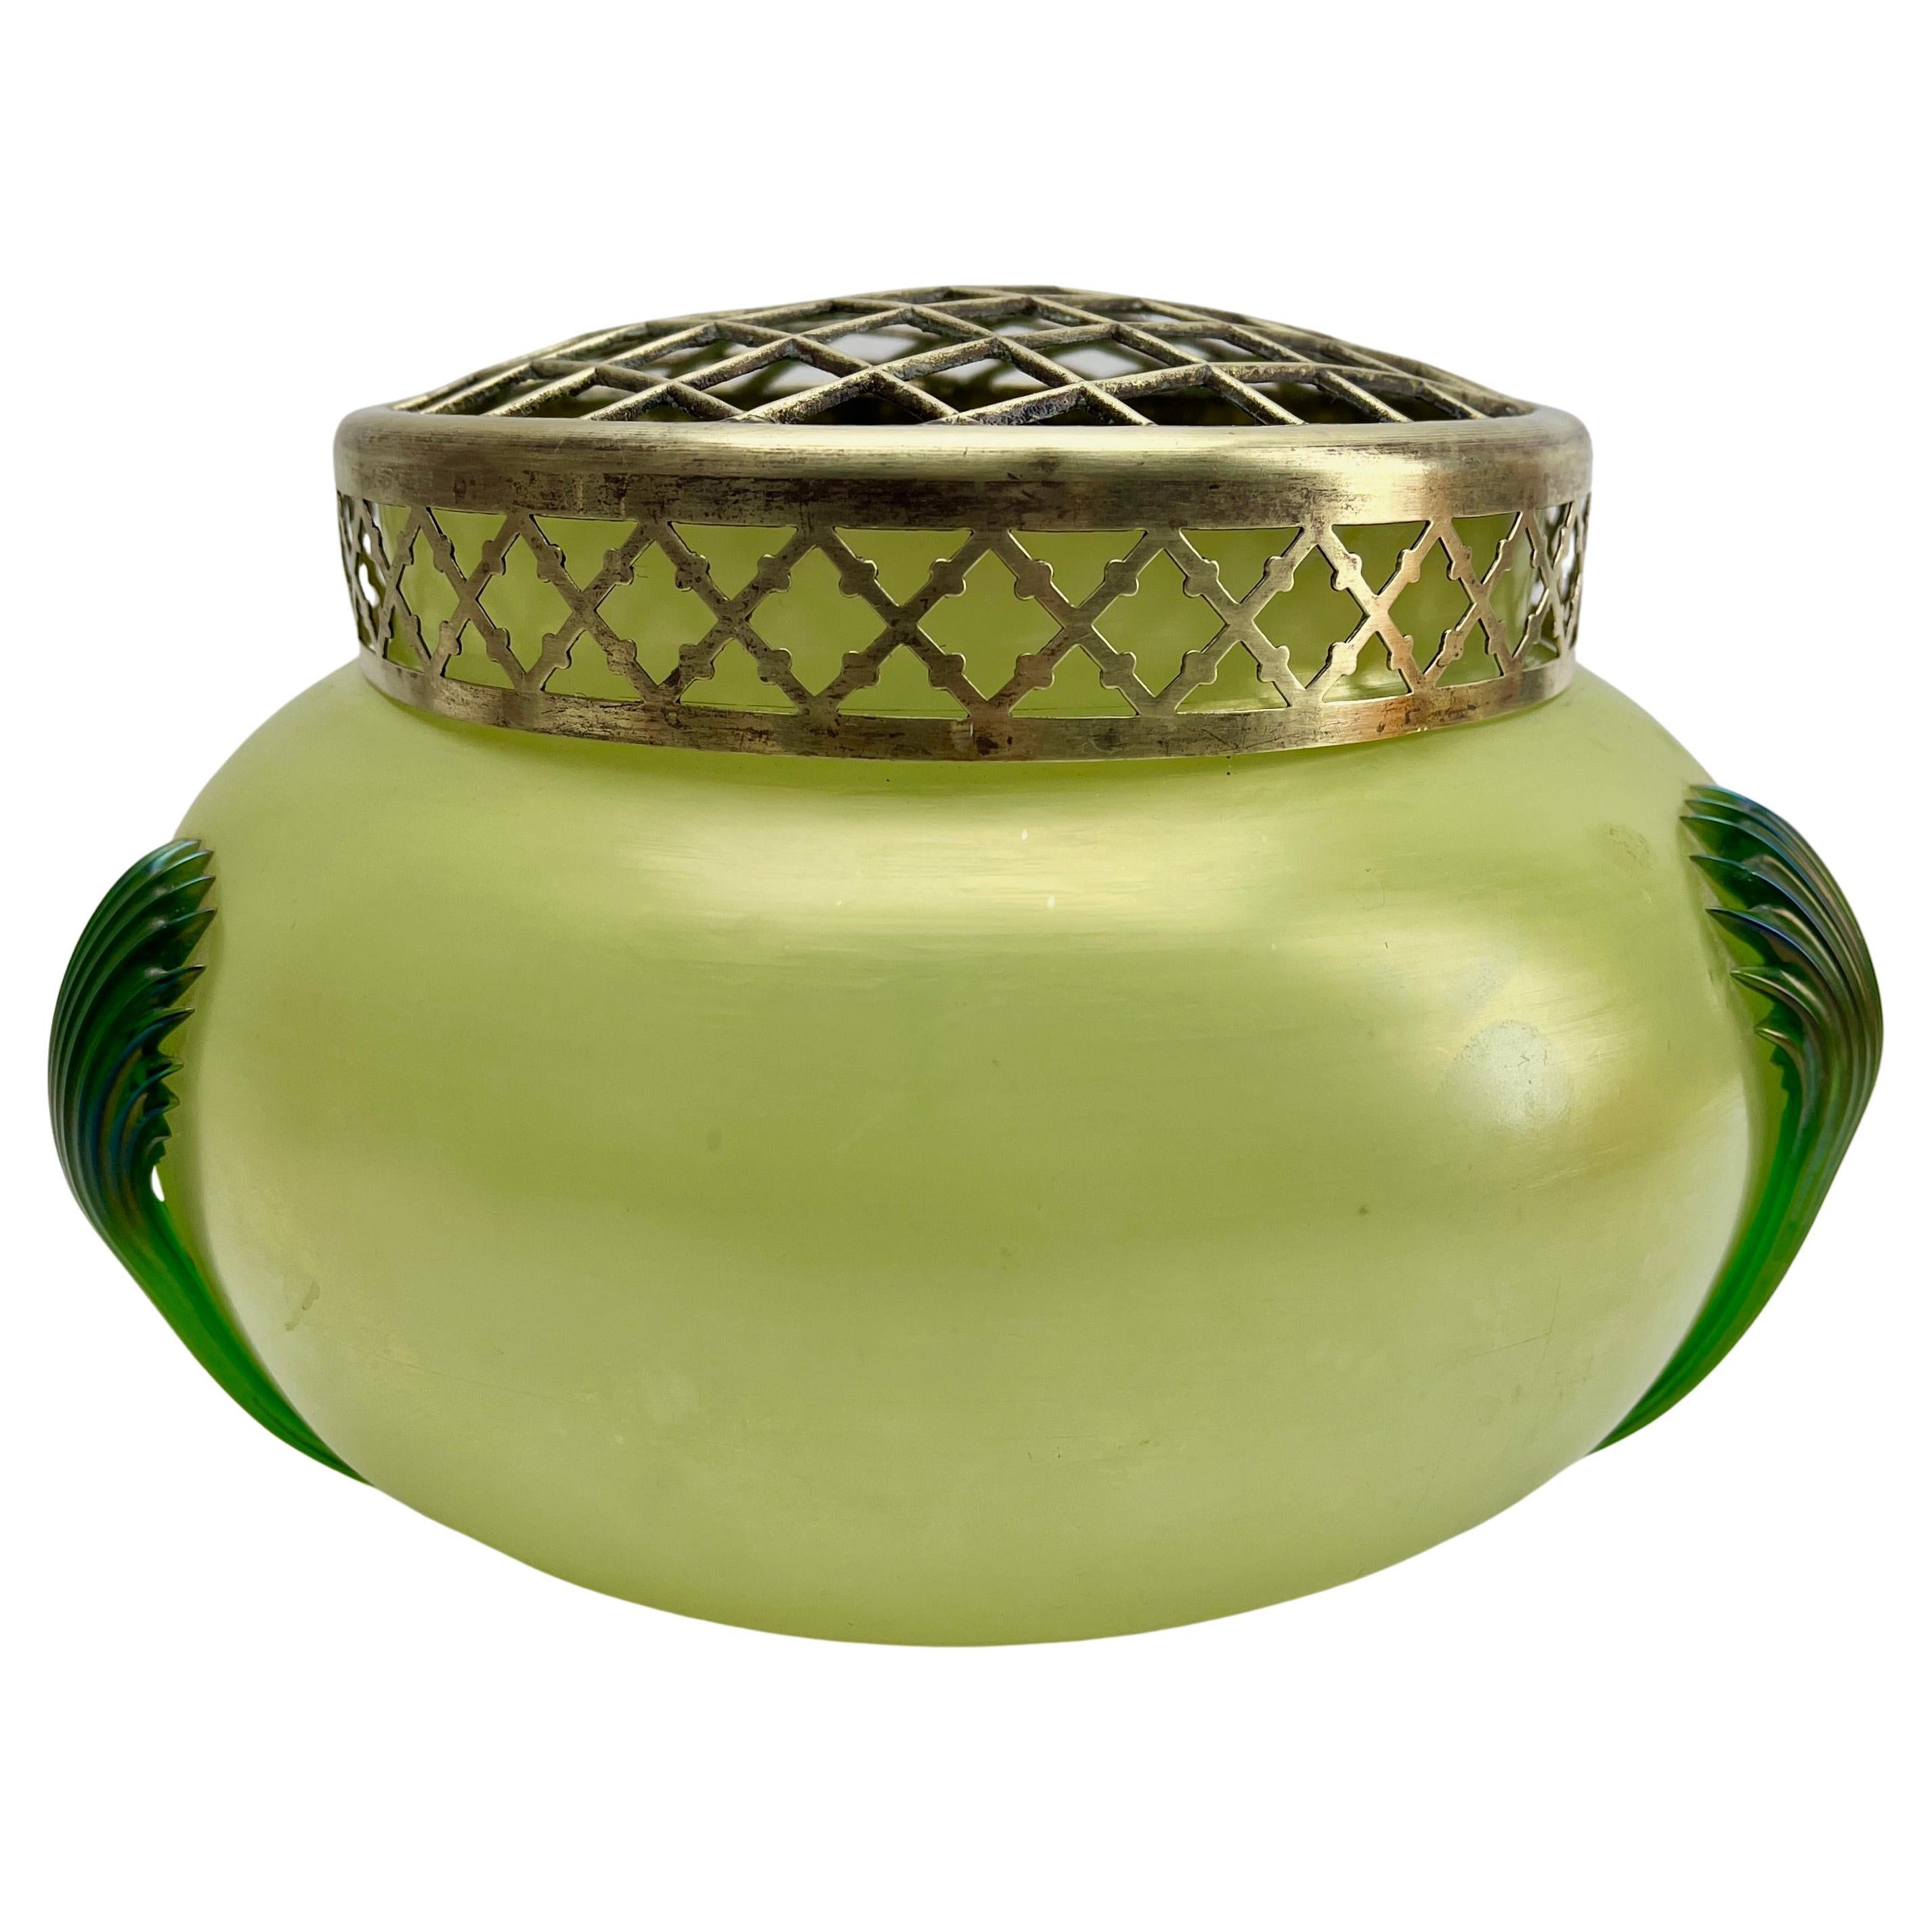 Grüne schillernde Jugendstil-Vase aus irisierendem Glas Pique Fleurs' von Loetz' mit Grille